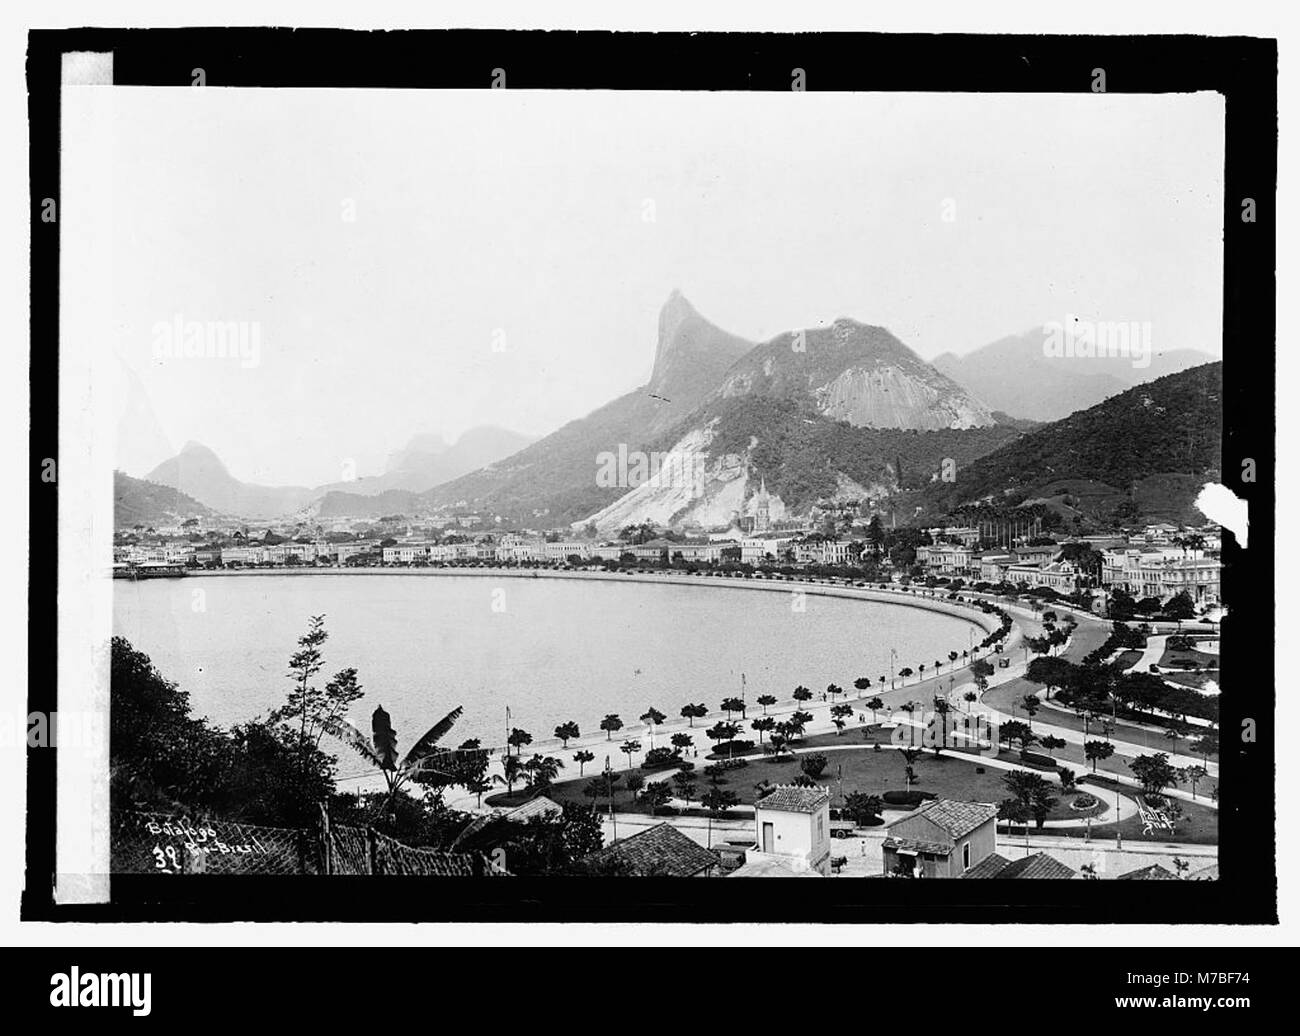 Brazil. Rio de Janeiro, Botafogo Bay LCCN2016821943 Stock Photo